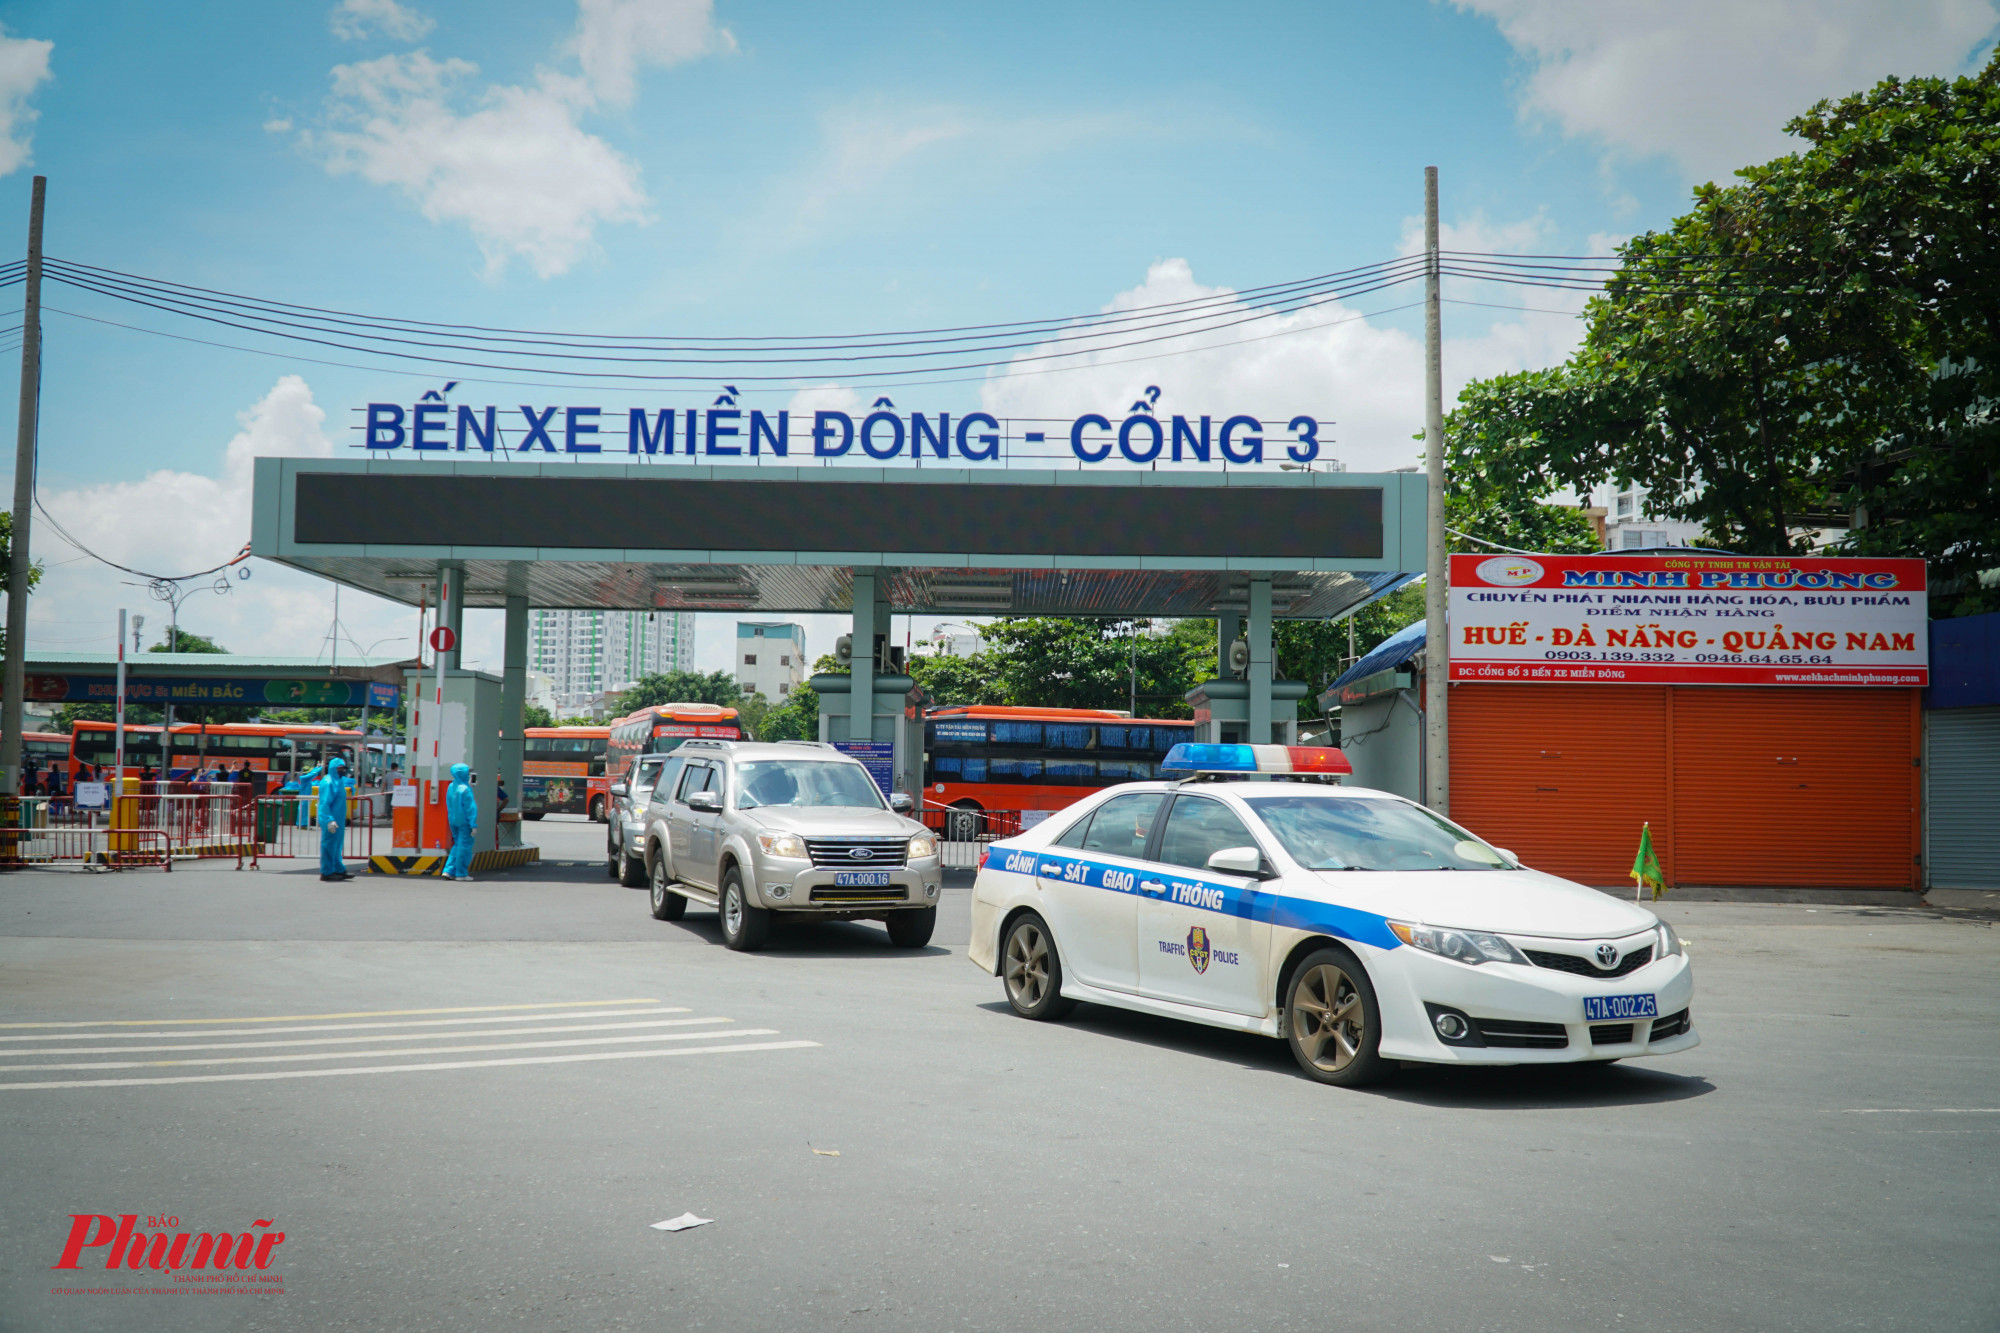 11g, xe CSGT tỉnh Đắk Lak dẫn đoàn hộ tống các phương tiện đưa công dân về tỉnh